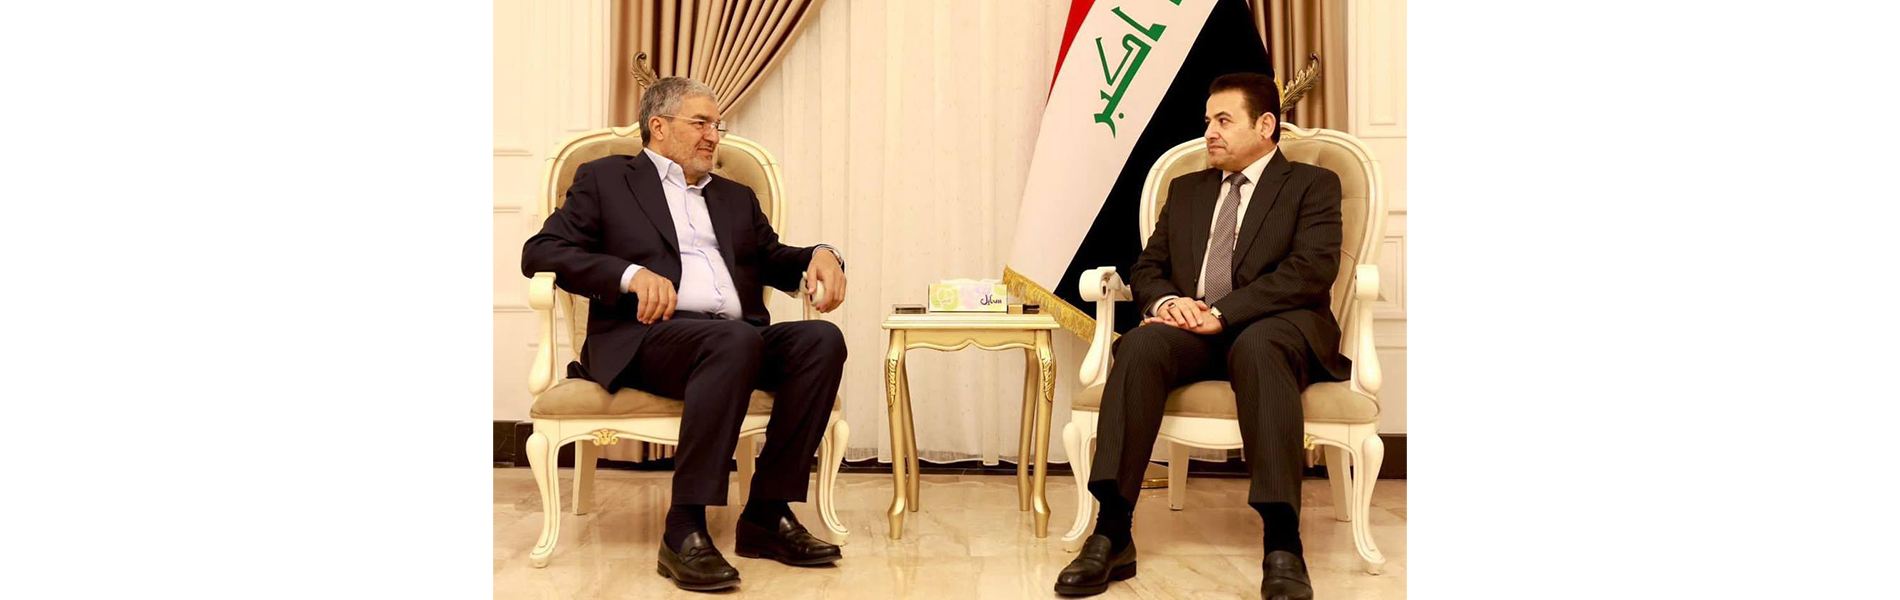 الأمين العام للحزب الإسلامي ومستشار الأمن القومي يبحثان المشهد السياسي العراقي